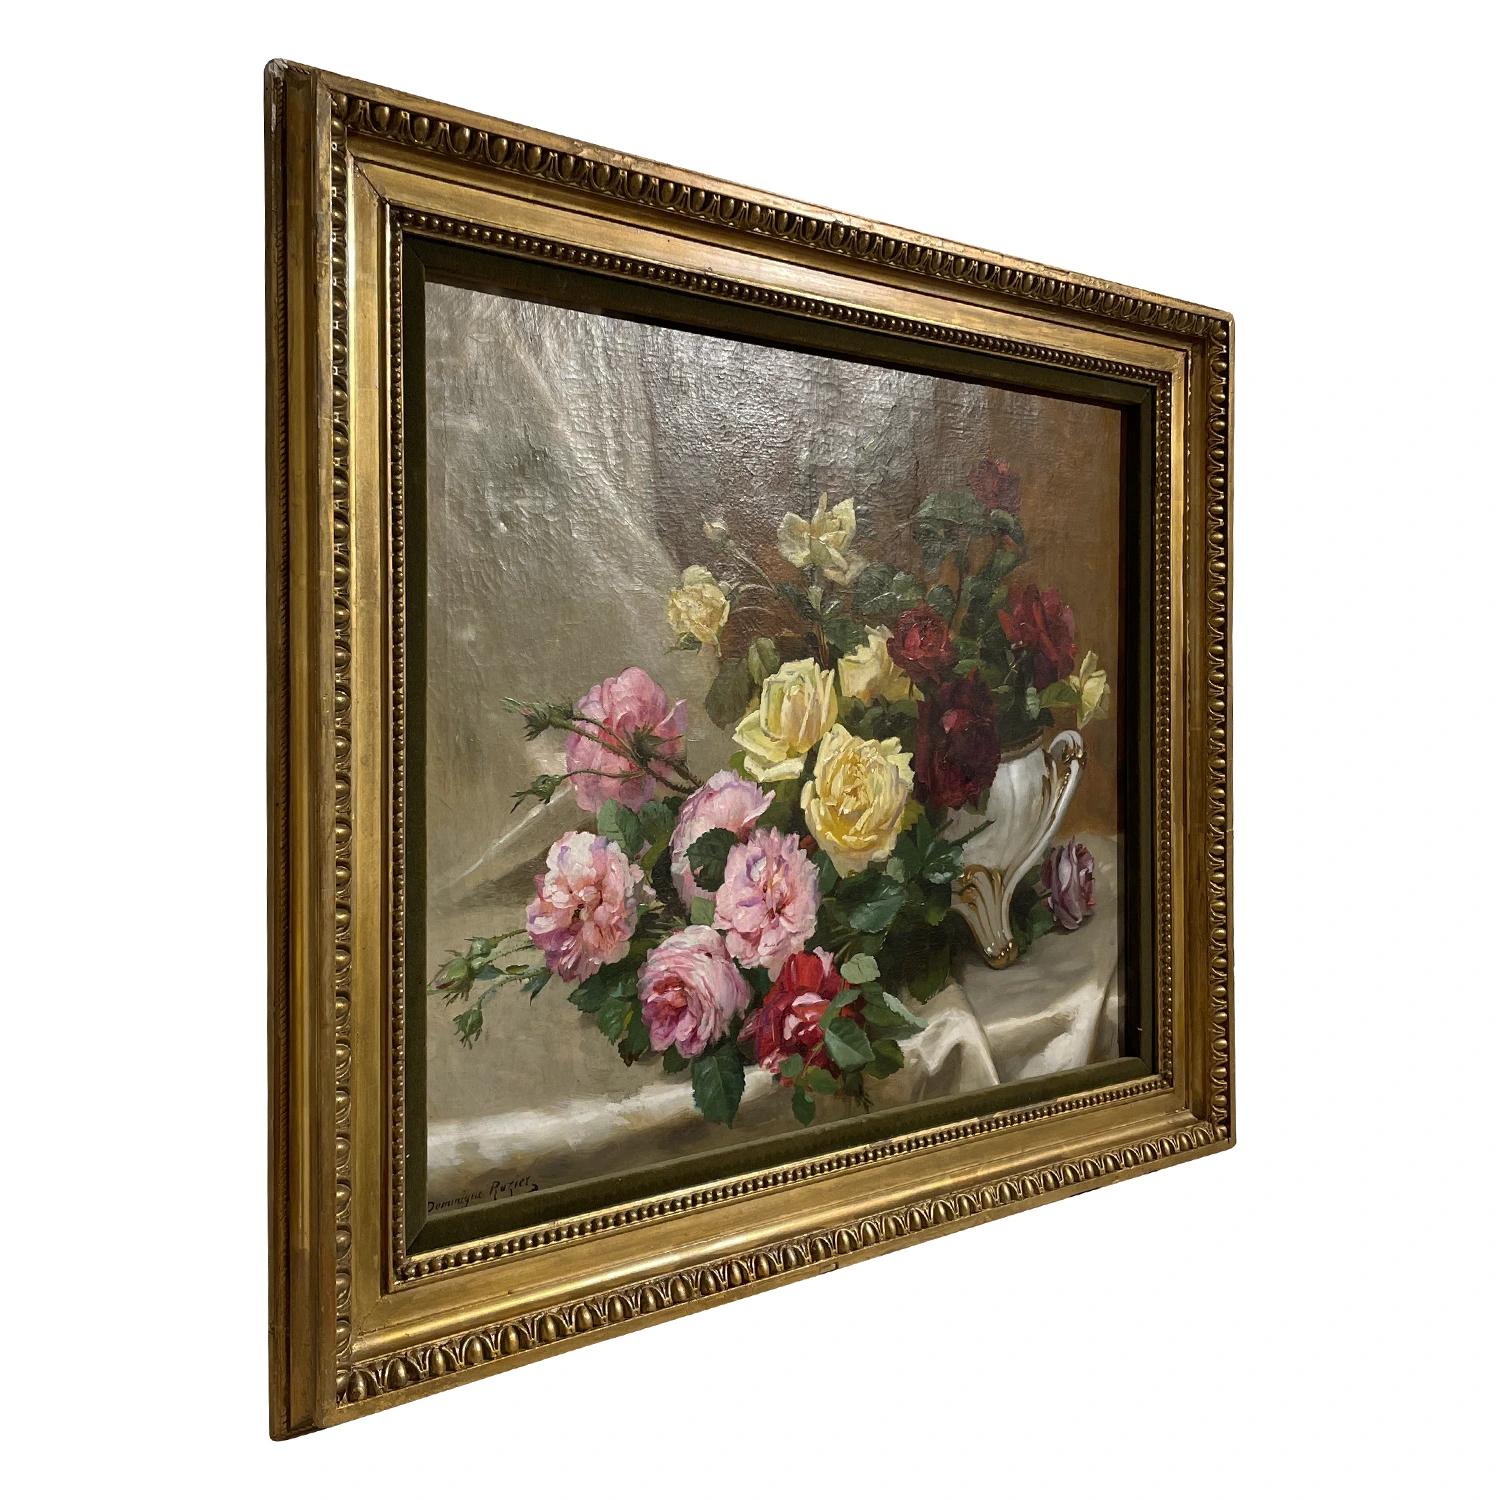 Une nature morte ancienne sur toile, représentant un vase en céramique blanche avec de nombreuses roses, peinte par Dominique Hubert Rozier dans un cadre en bois doré d'origine, en bon état. Le tableau parisien coloré représente une journée